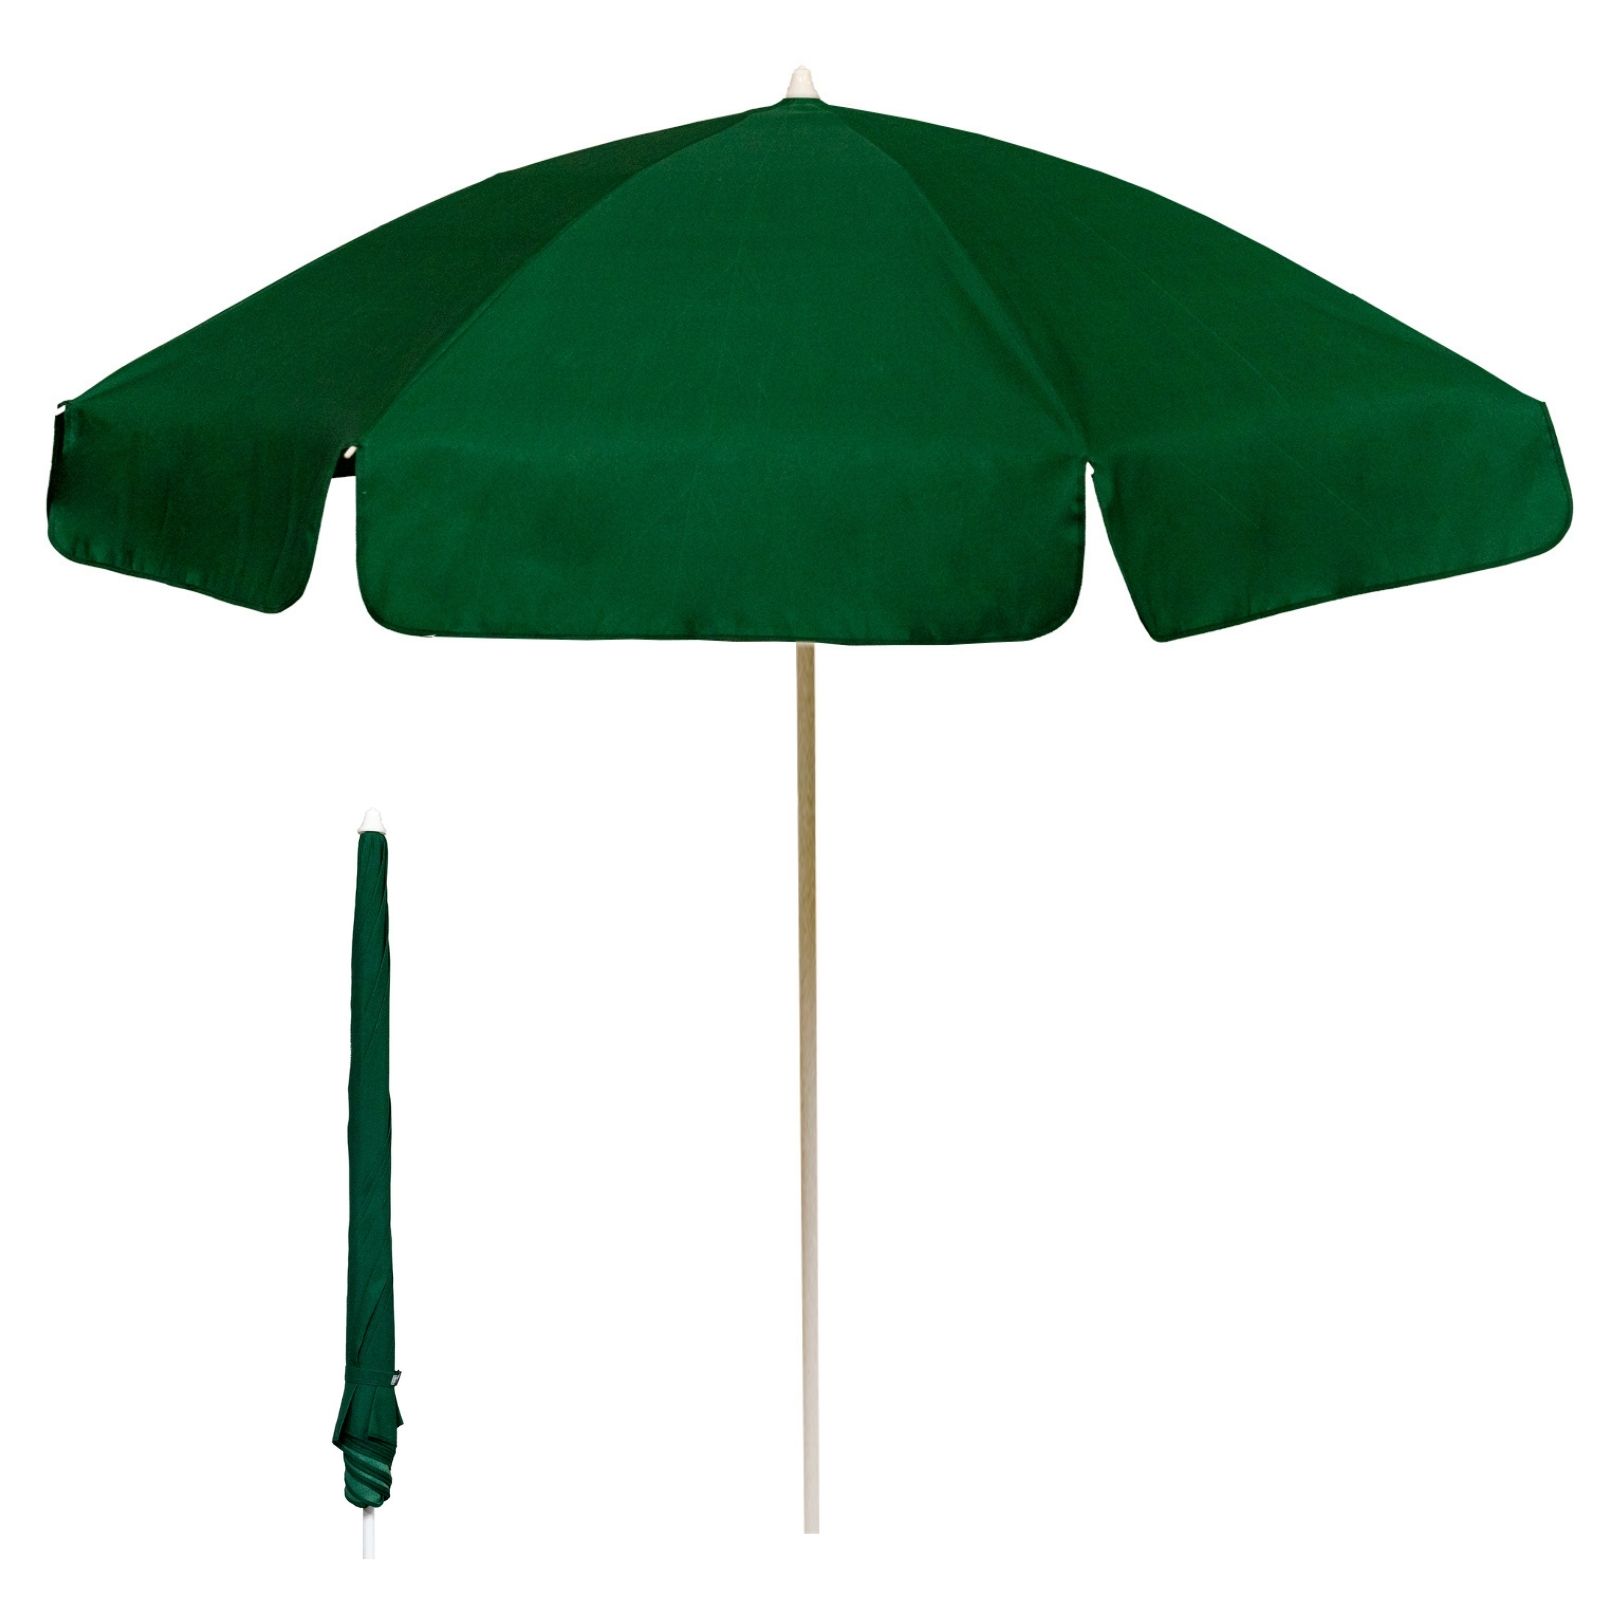 elf Harnas Moeras Garden Umbrellas/Pub Parasols - 2m Diameter - Wholesale Trade Prices